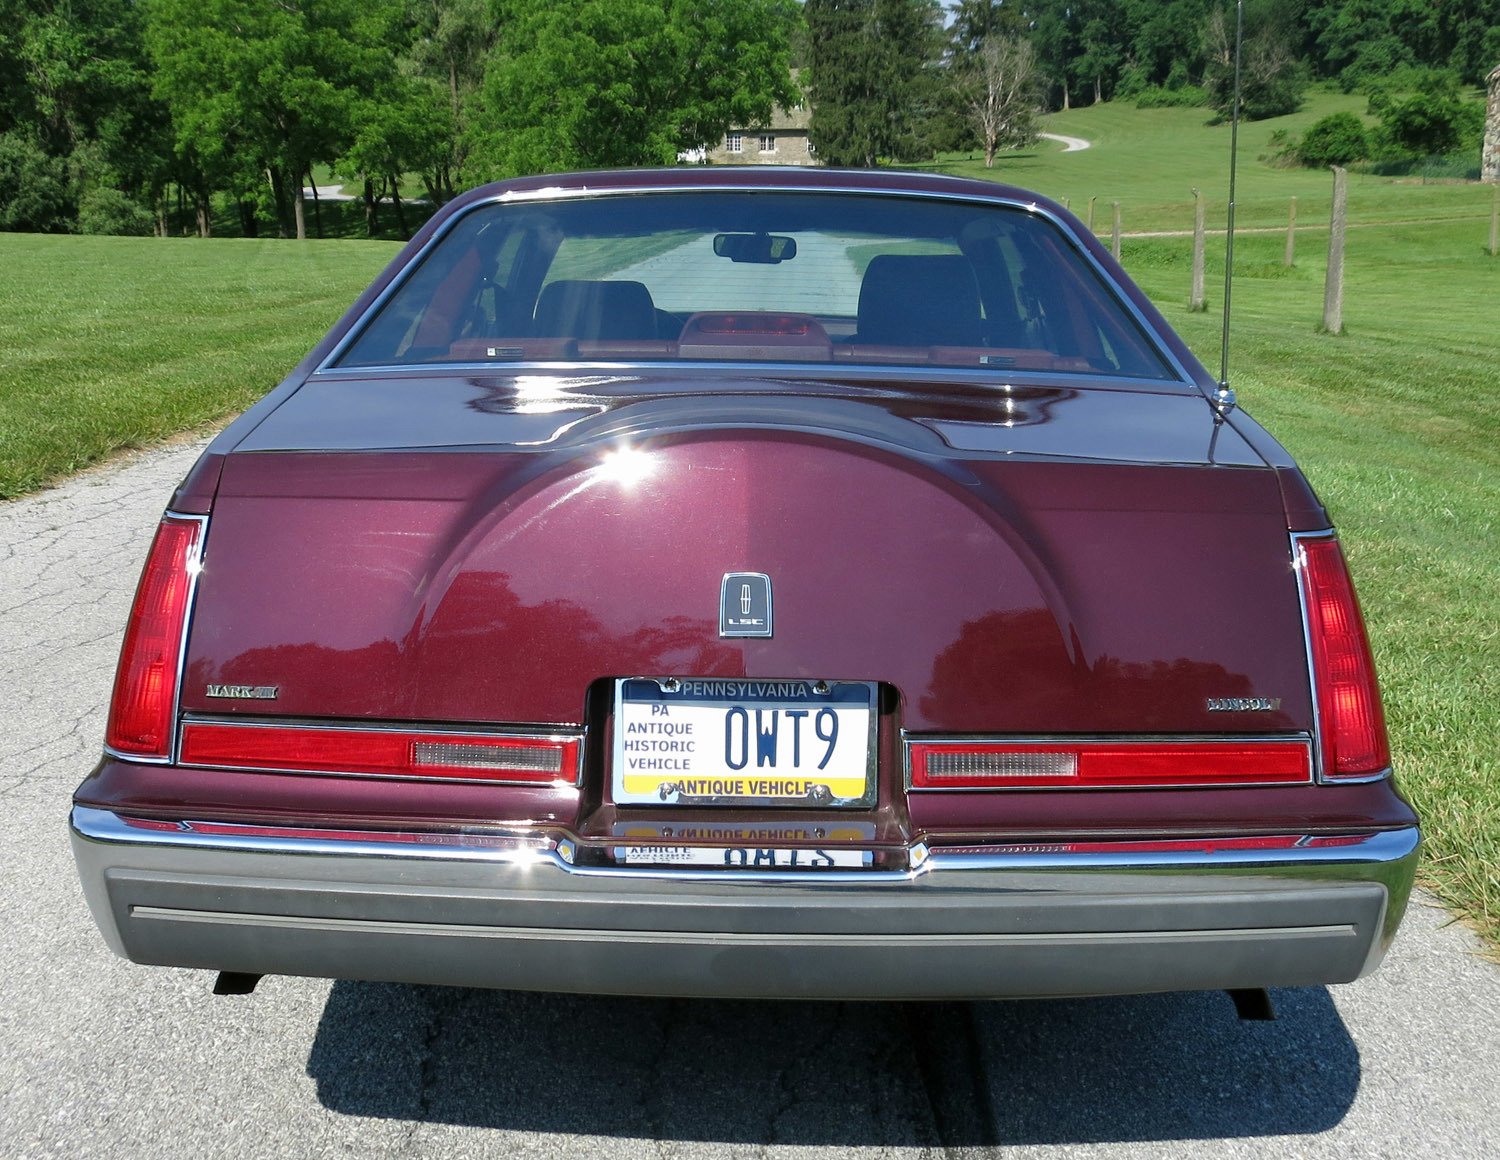 1989 Lincoln Mark VII